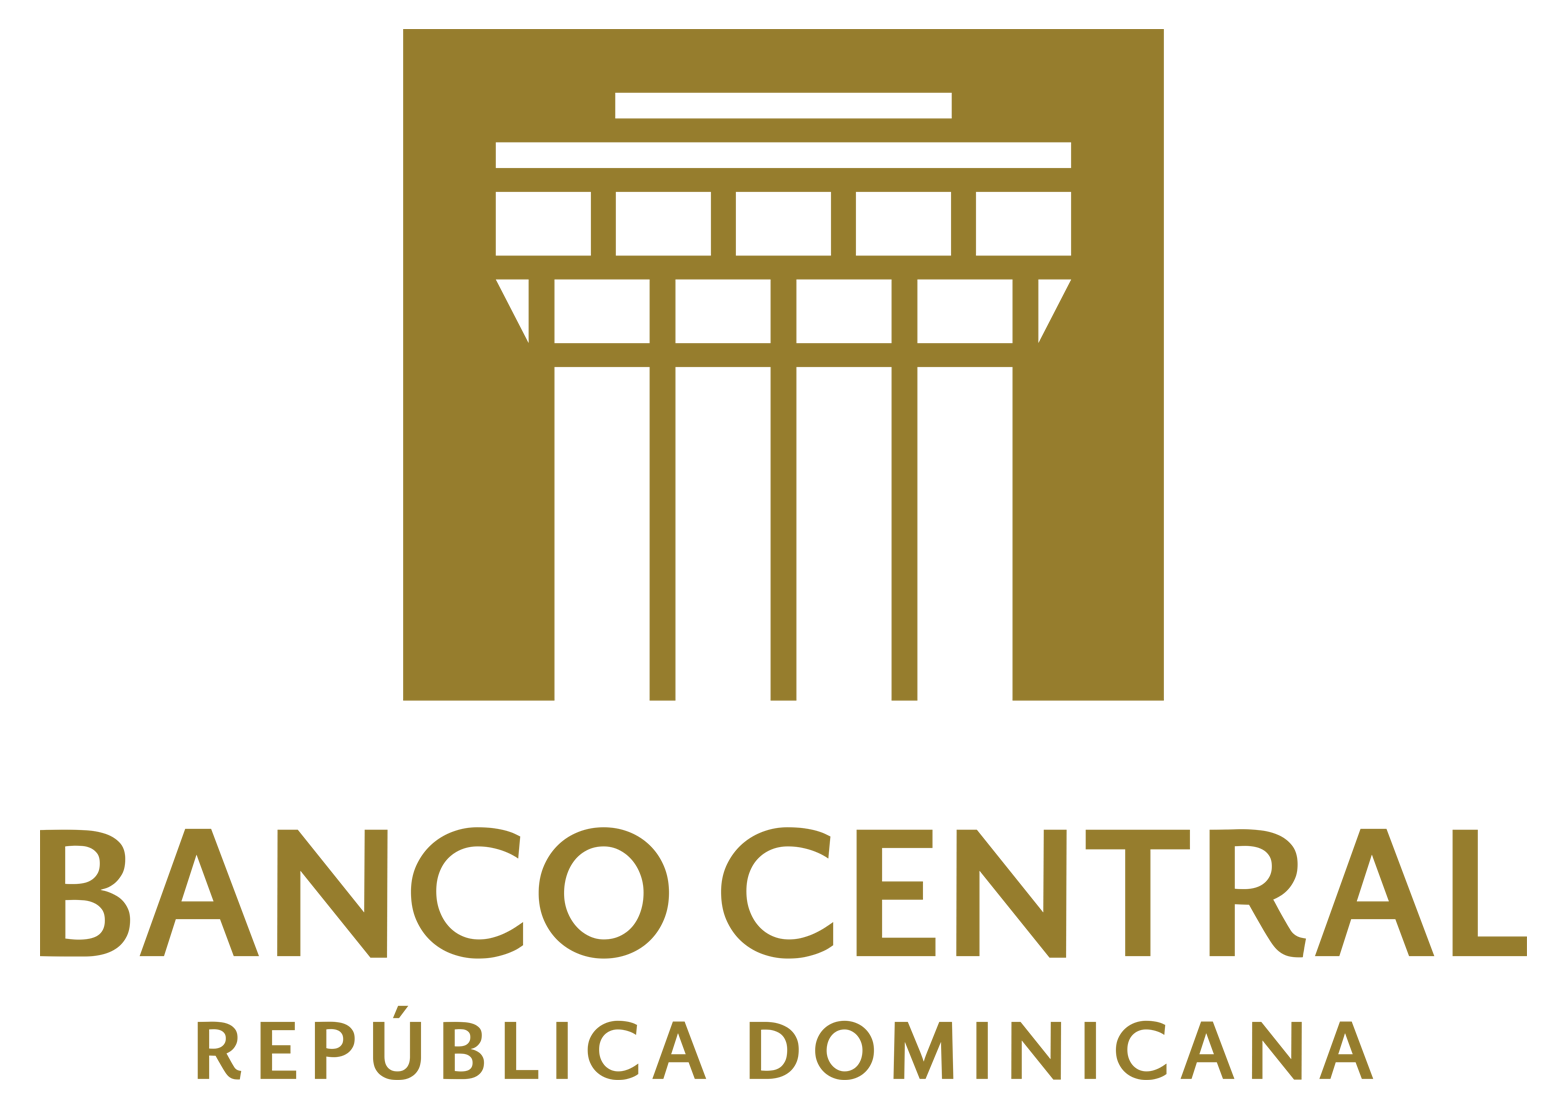 Banco Central Dominicano